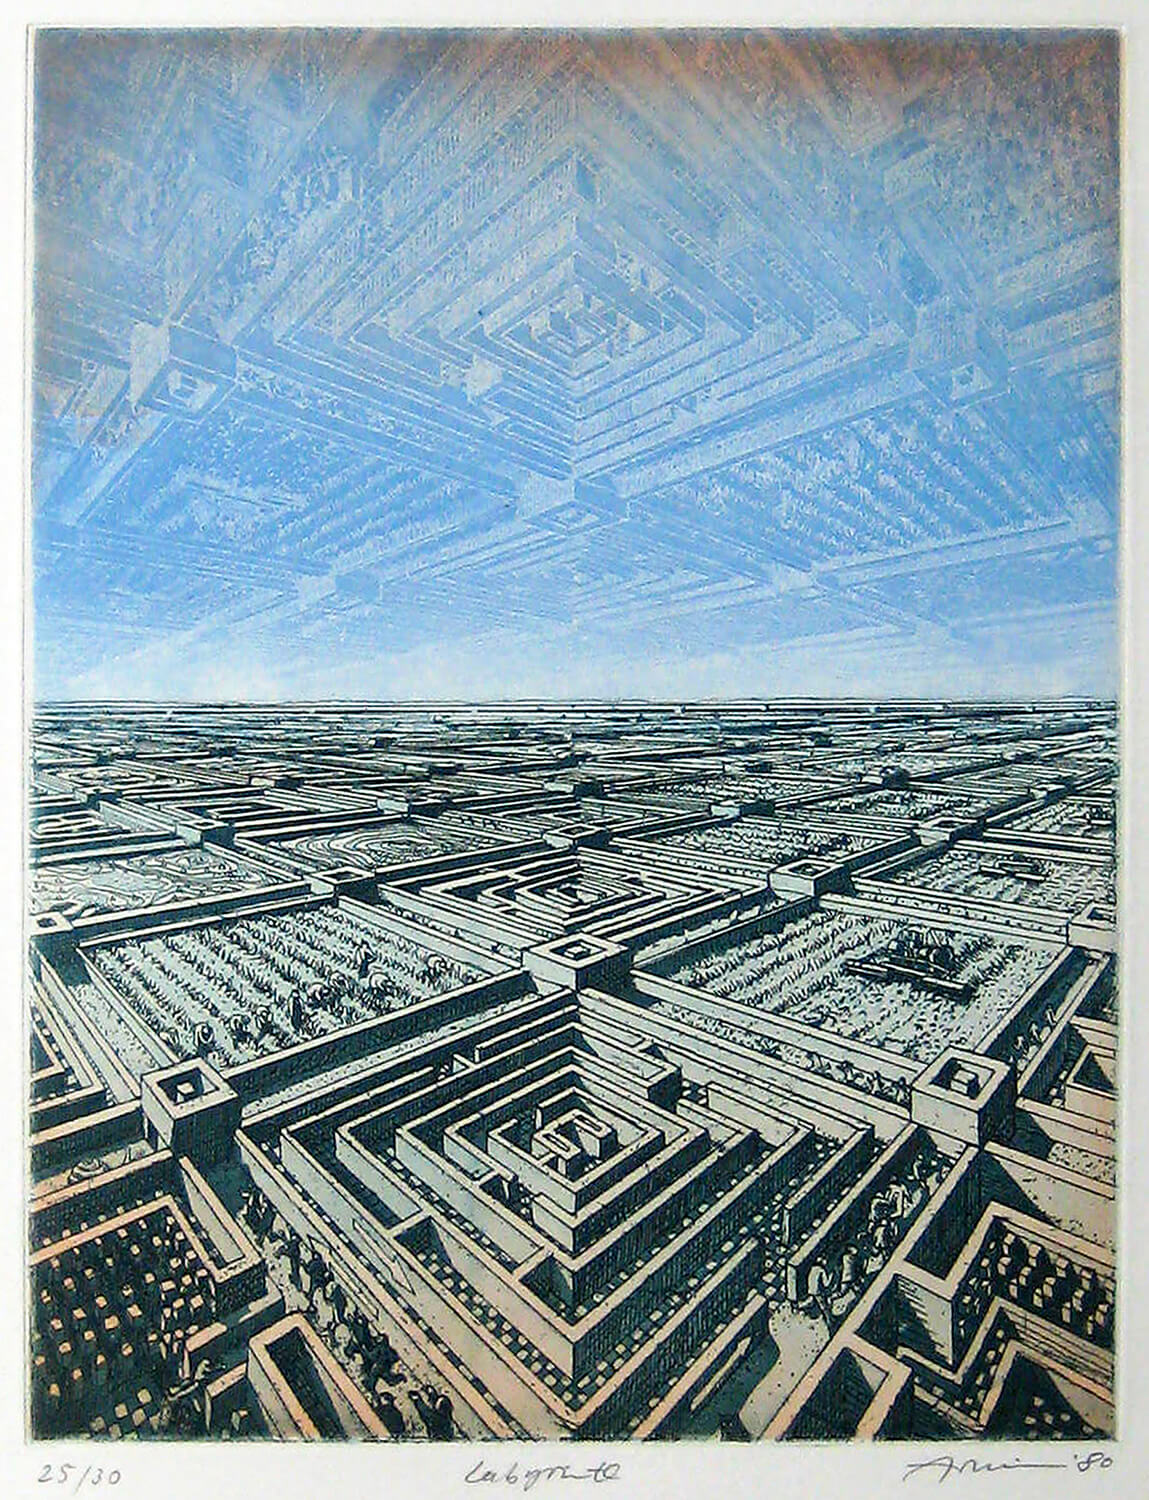 Bettina von Arnim, Labyrinth, 1980, Farbradierung, Auflage: 30, Bild: 27 x 21 cm